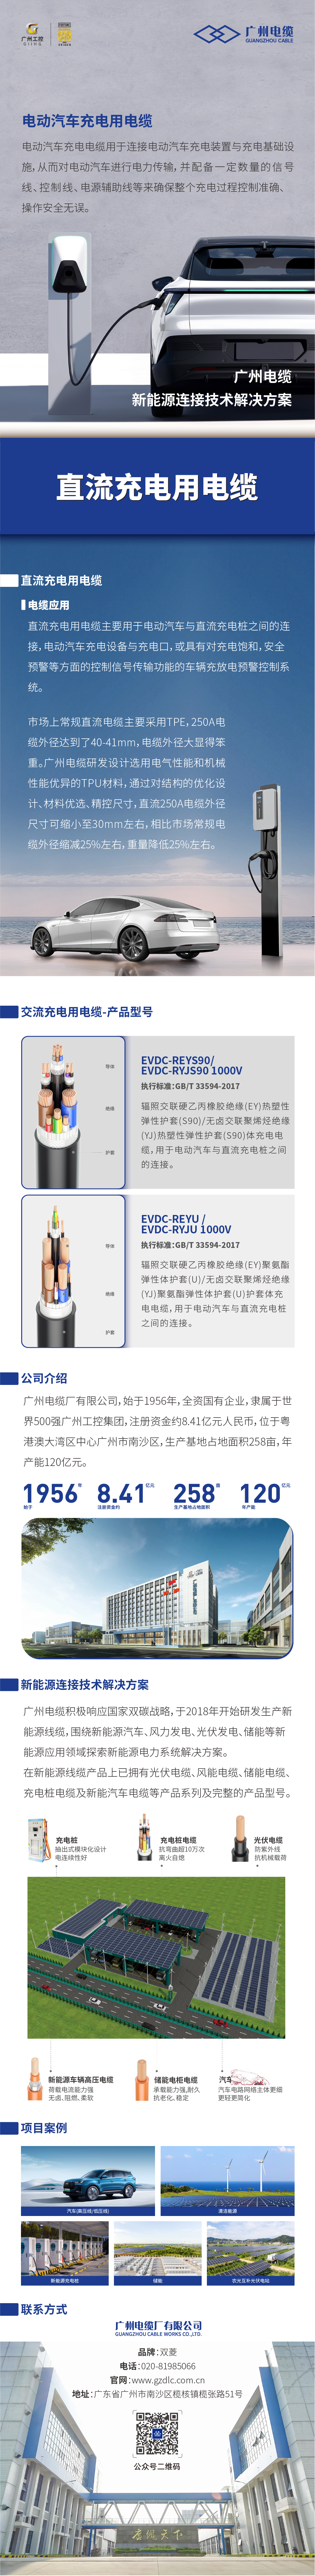 广州电缆-直流充电用电缆.jpg